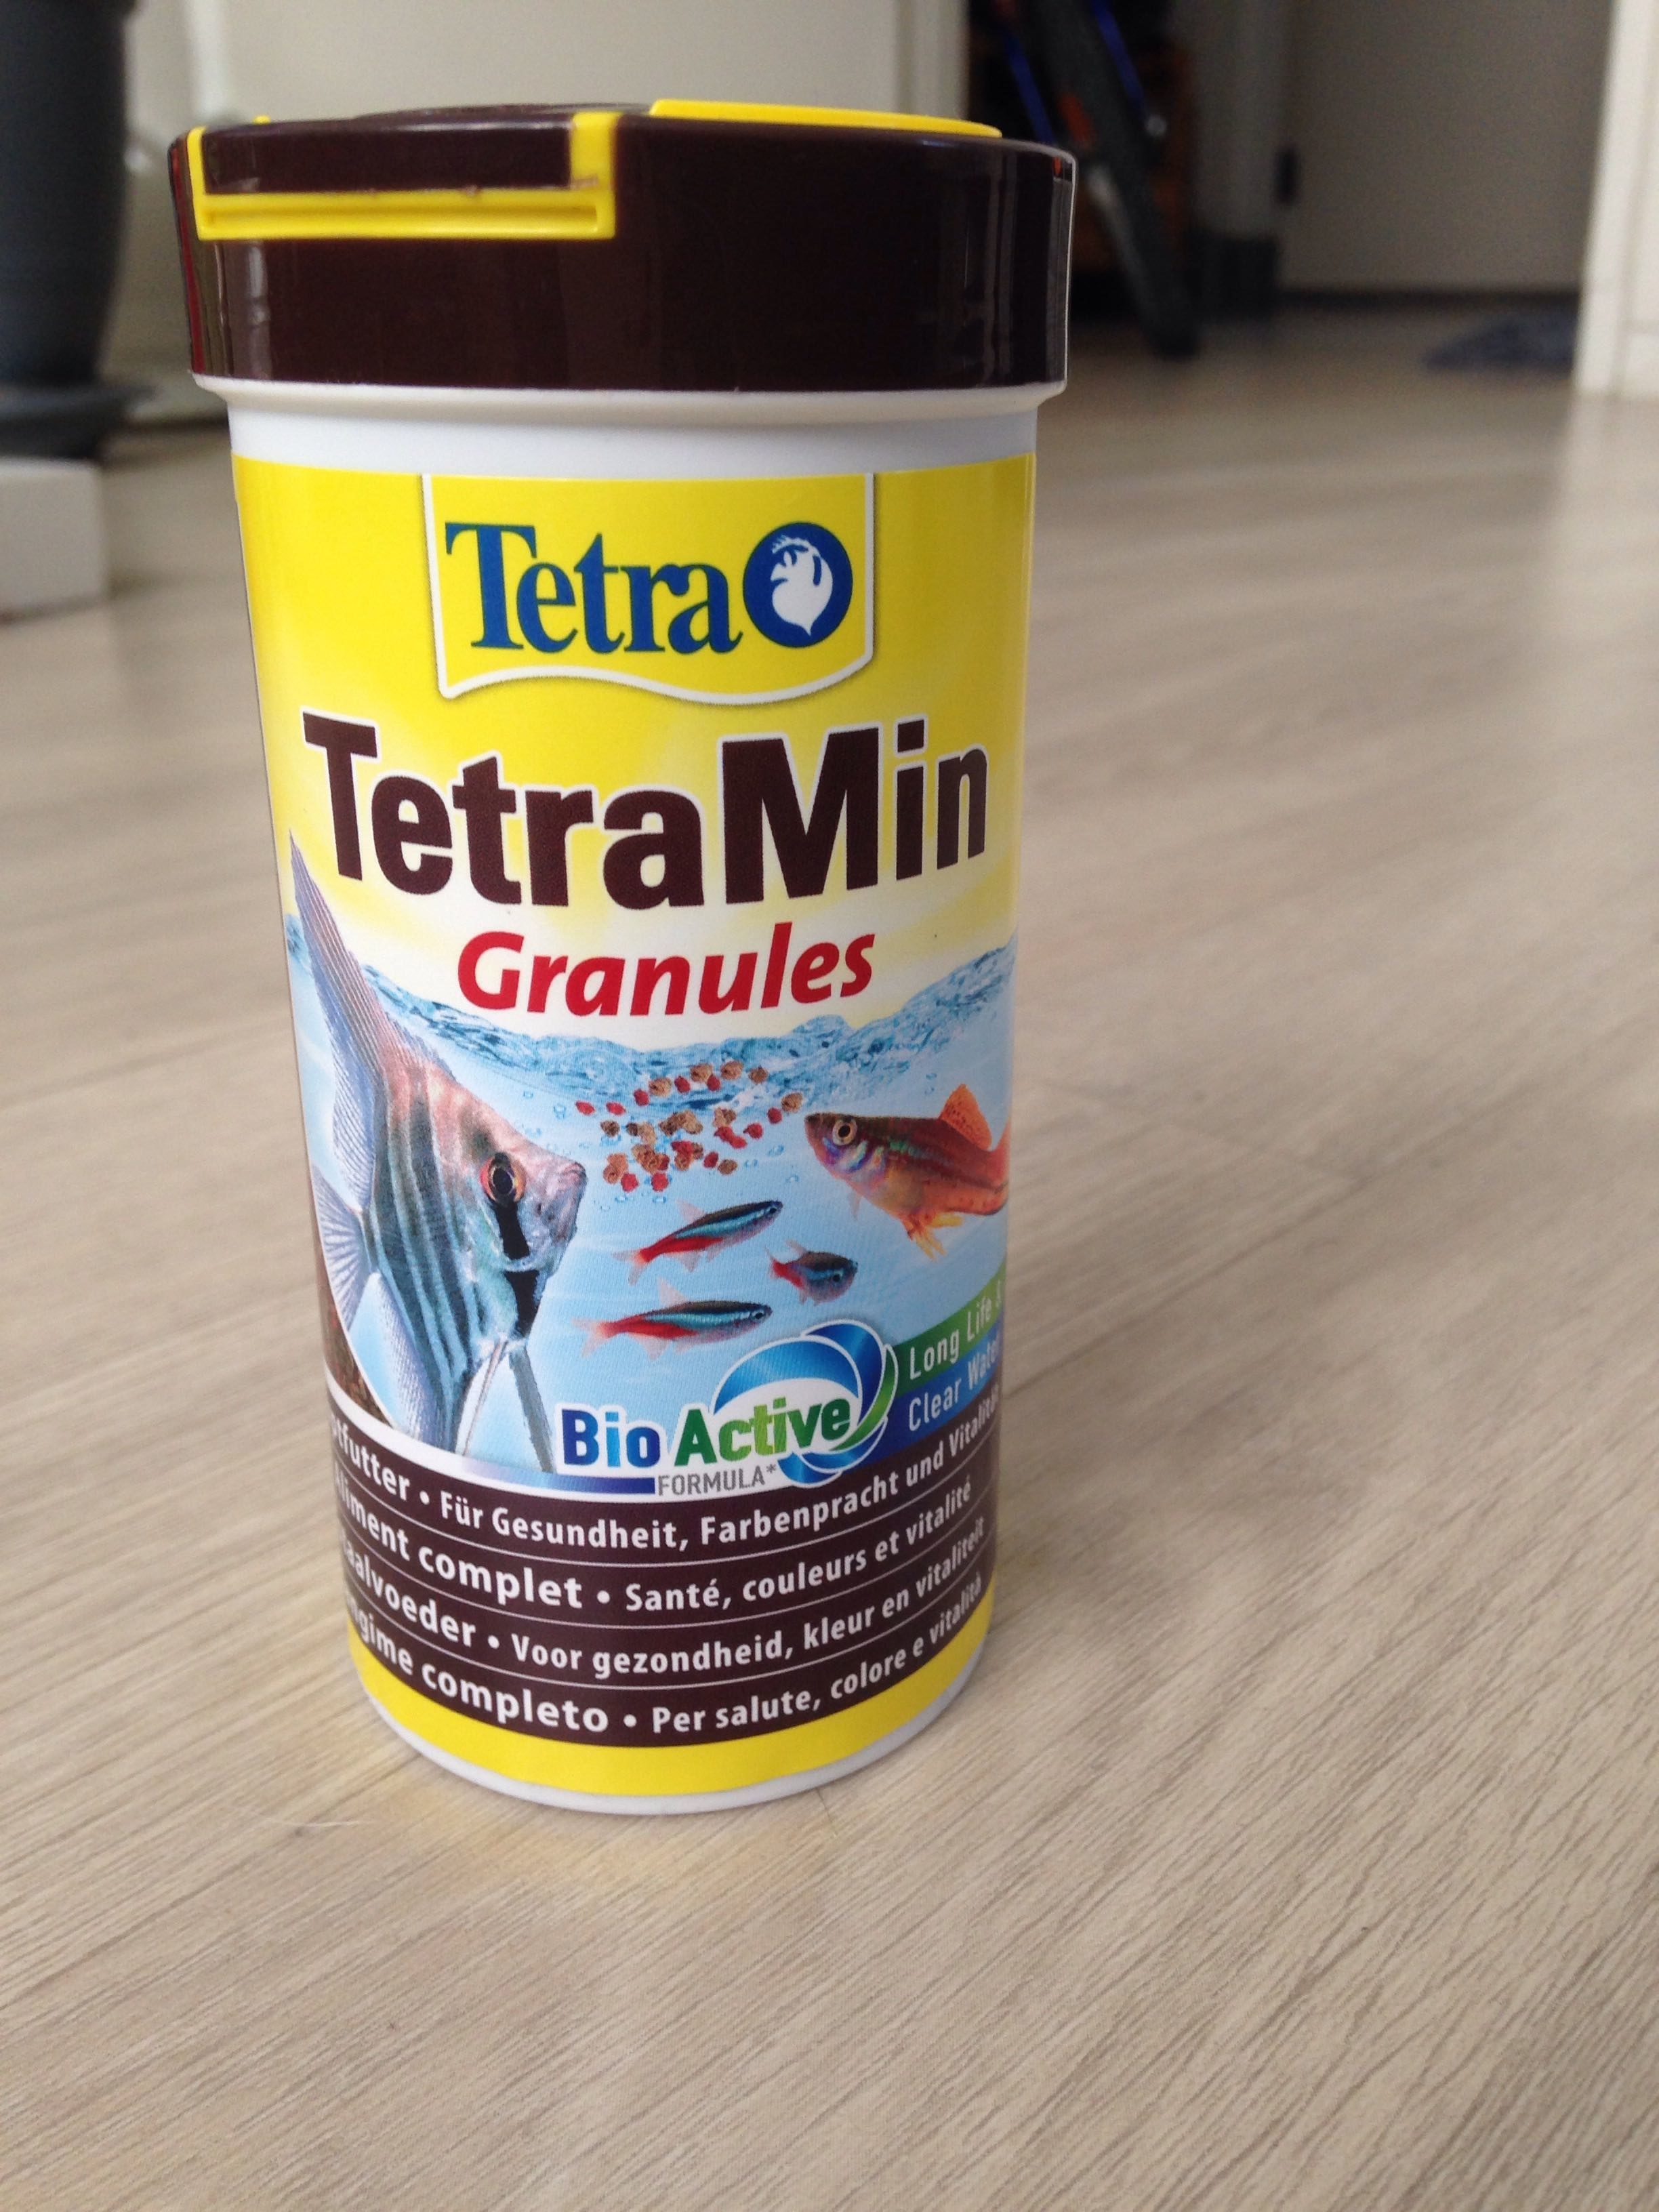 TetraMin granules - Product - fr